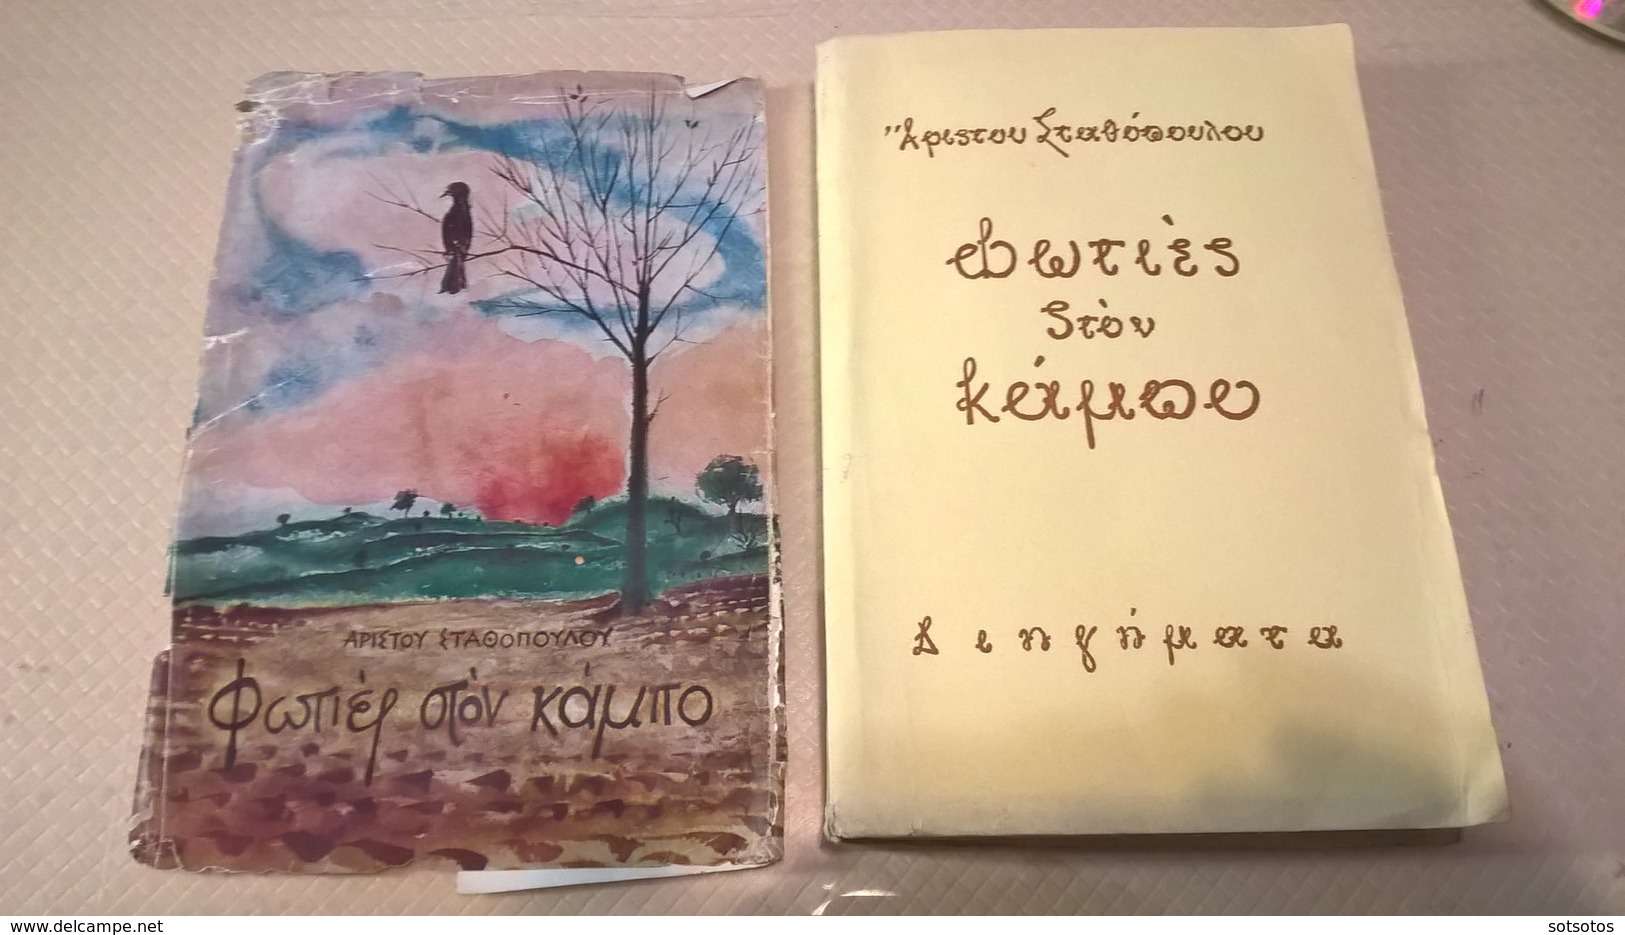 GREEK BOOK - ΦΩΤΙΕΣ στον ΚΑΜΠΟ: Άριστου ΣΤΑΘΟΠΟΥΛΟΥ (ιδιόχειρη αφιέρωση του συγγραφέα στο γνωστό ιστορικό συγγραφέα Κώστ - Romane